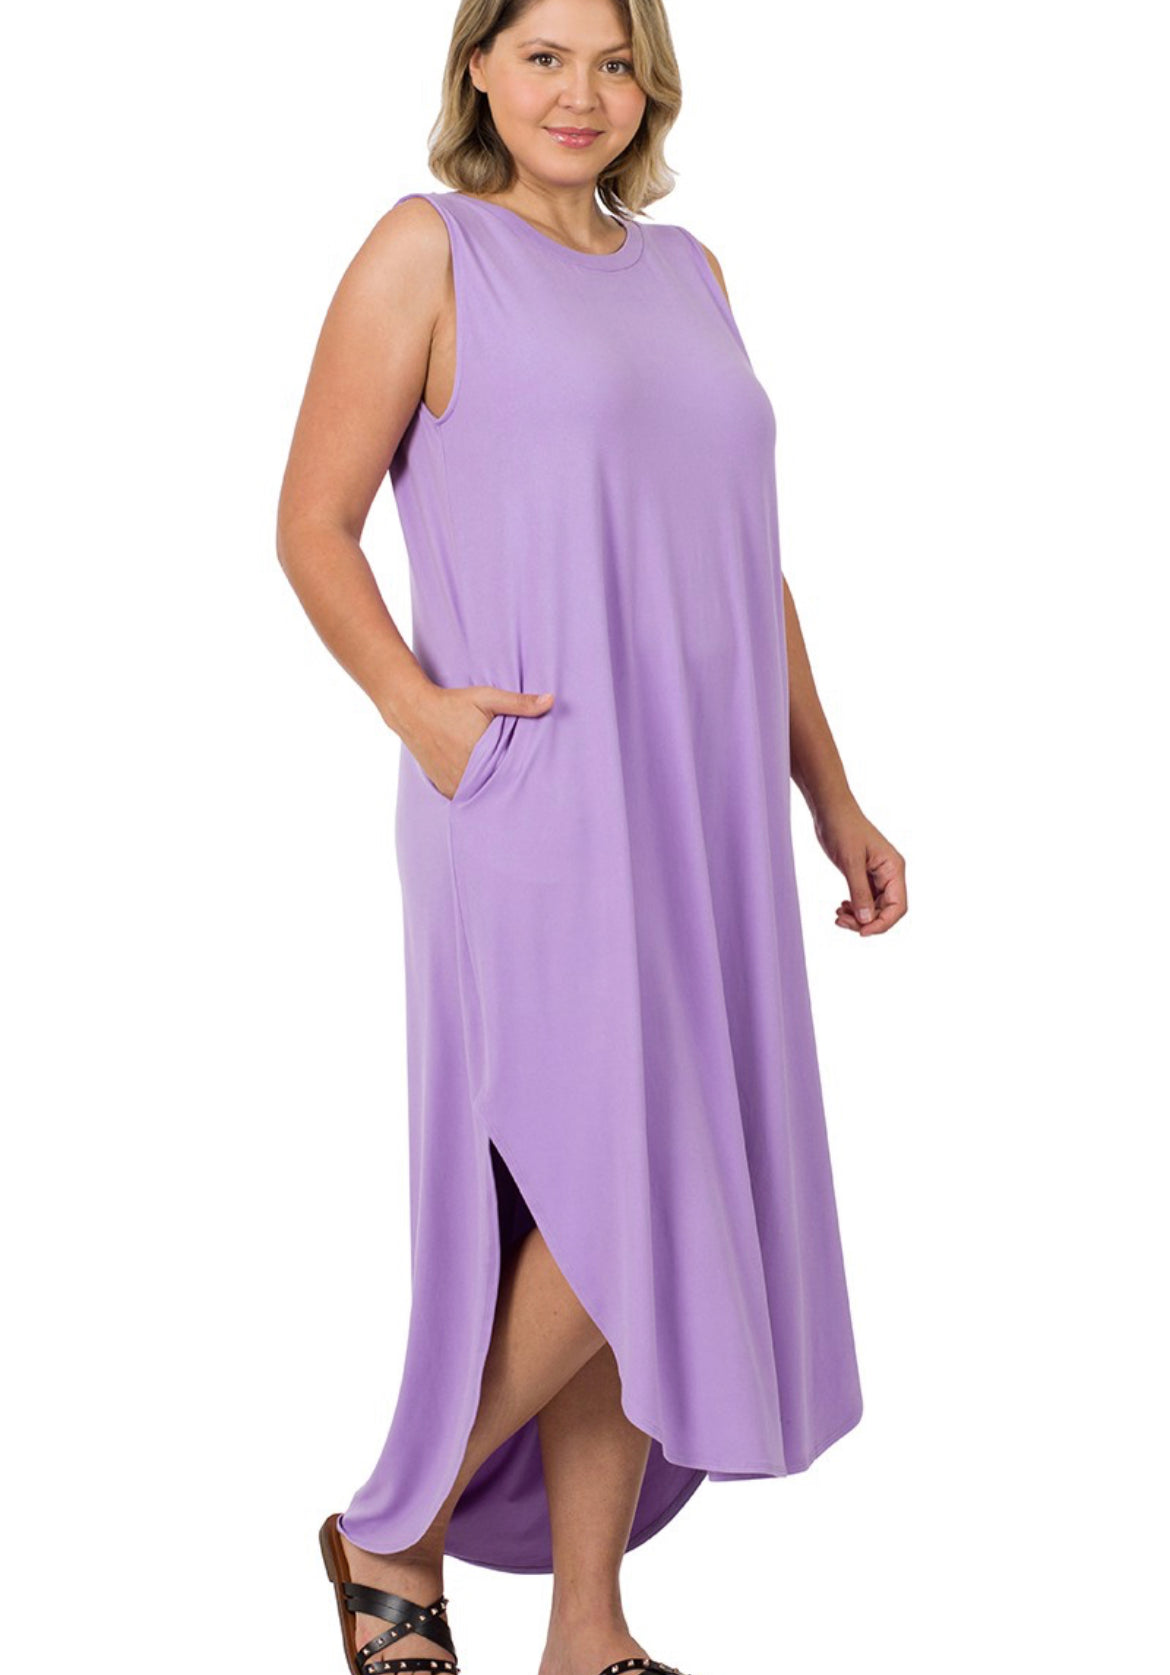 Lavender Side Slit Dress With Pockets- Plus